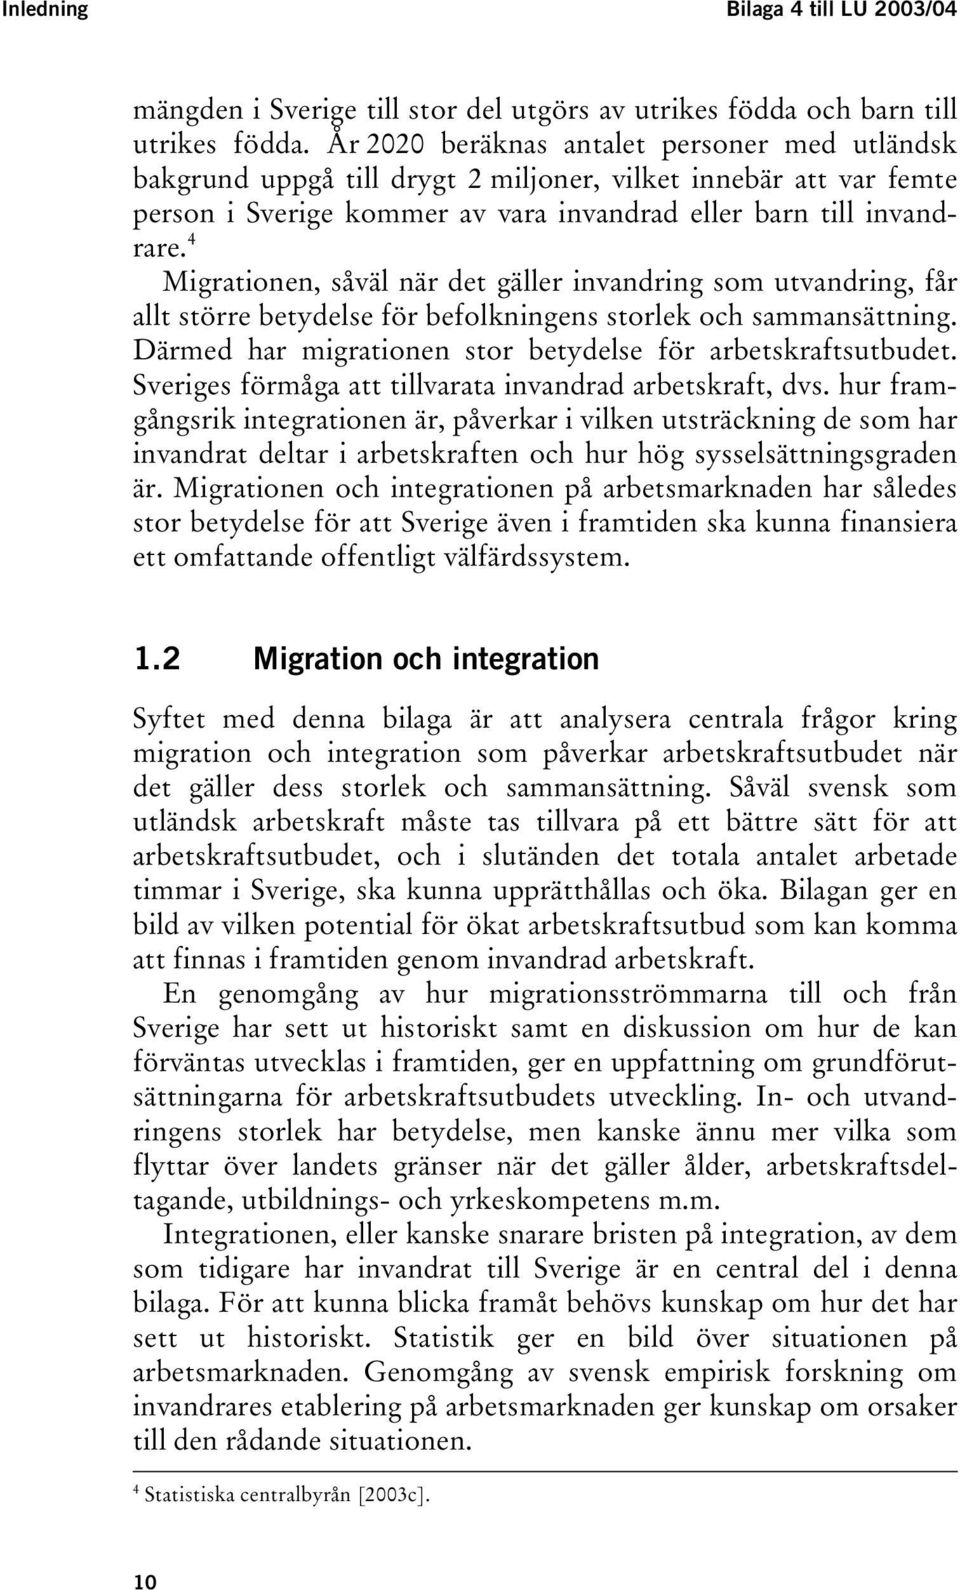 4 Migrationen, såväl när det gäller invandring som utvandring, får allt större betydelse för befolkningens storlek och sammansättning. Därmed har migrationen stor betydelse för arbetskraftsutbudet.